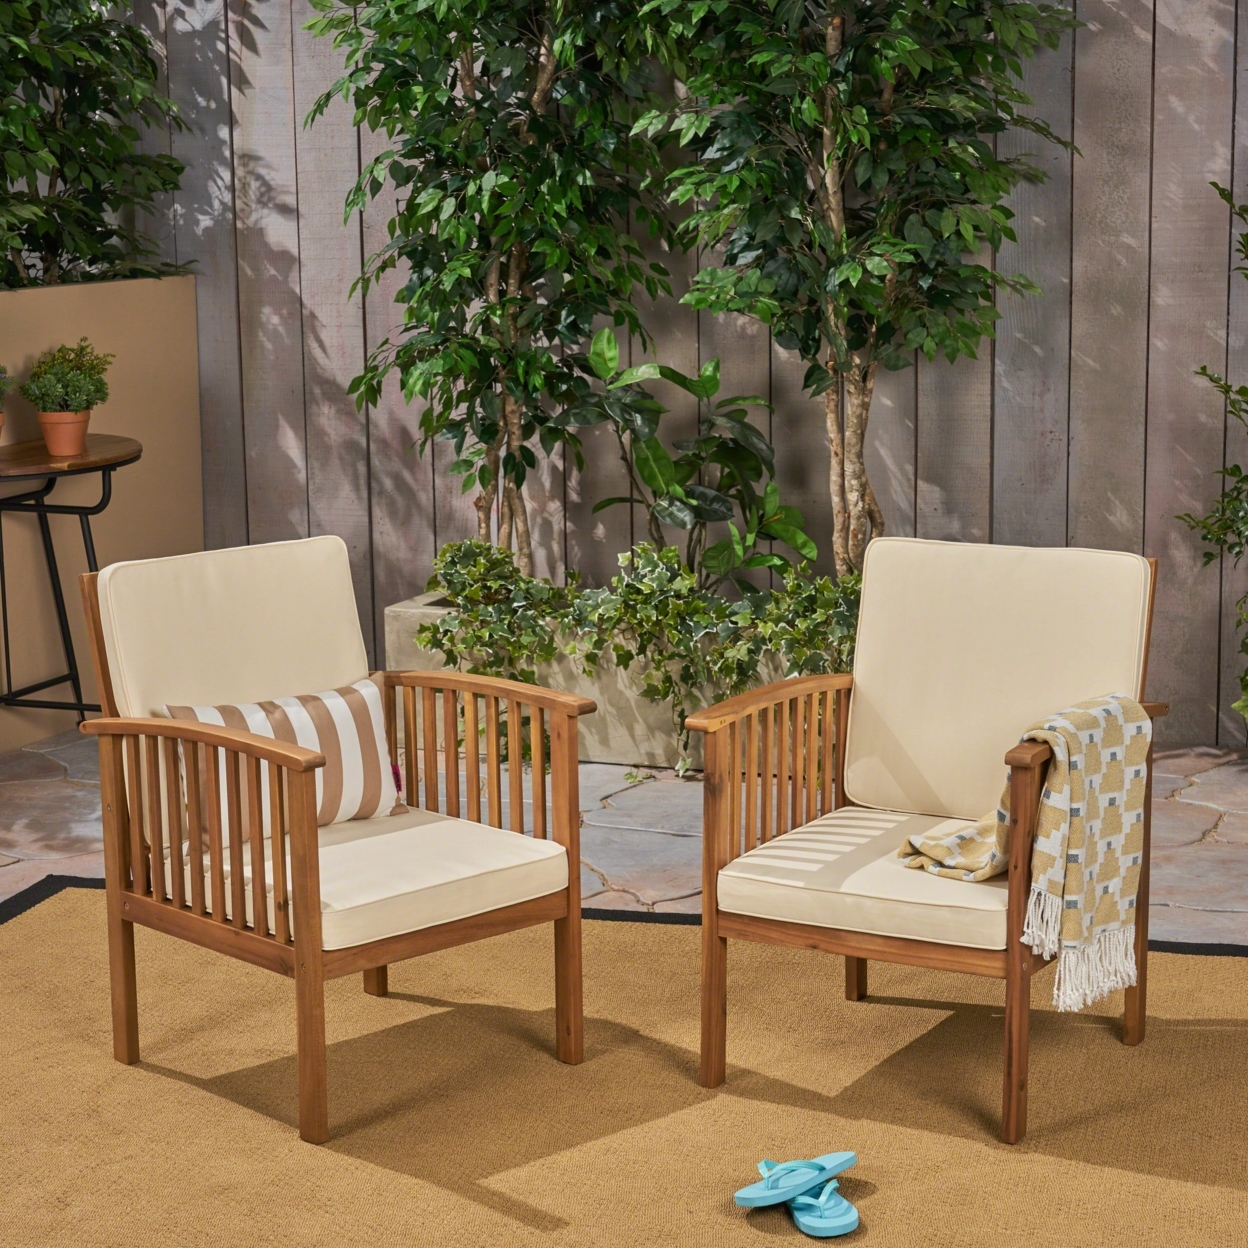 Ray Acacia Outdoor Acacia Wood Club Chairs With Cushions - Dark Teal, Brown Patina, Set Of 4